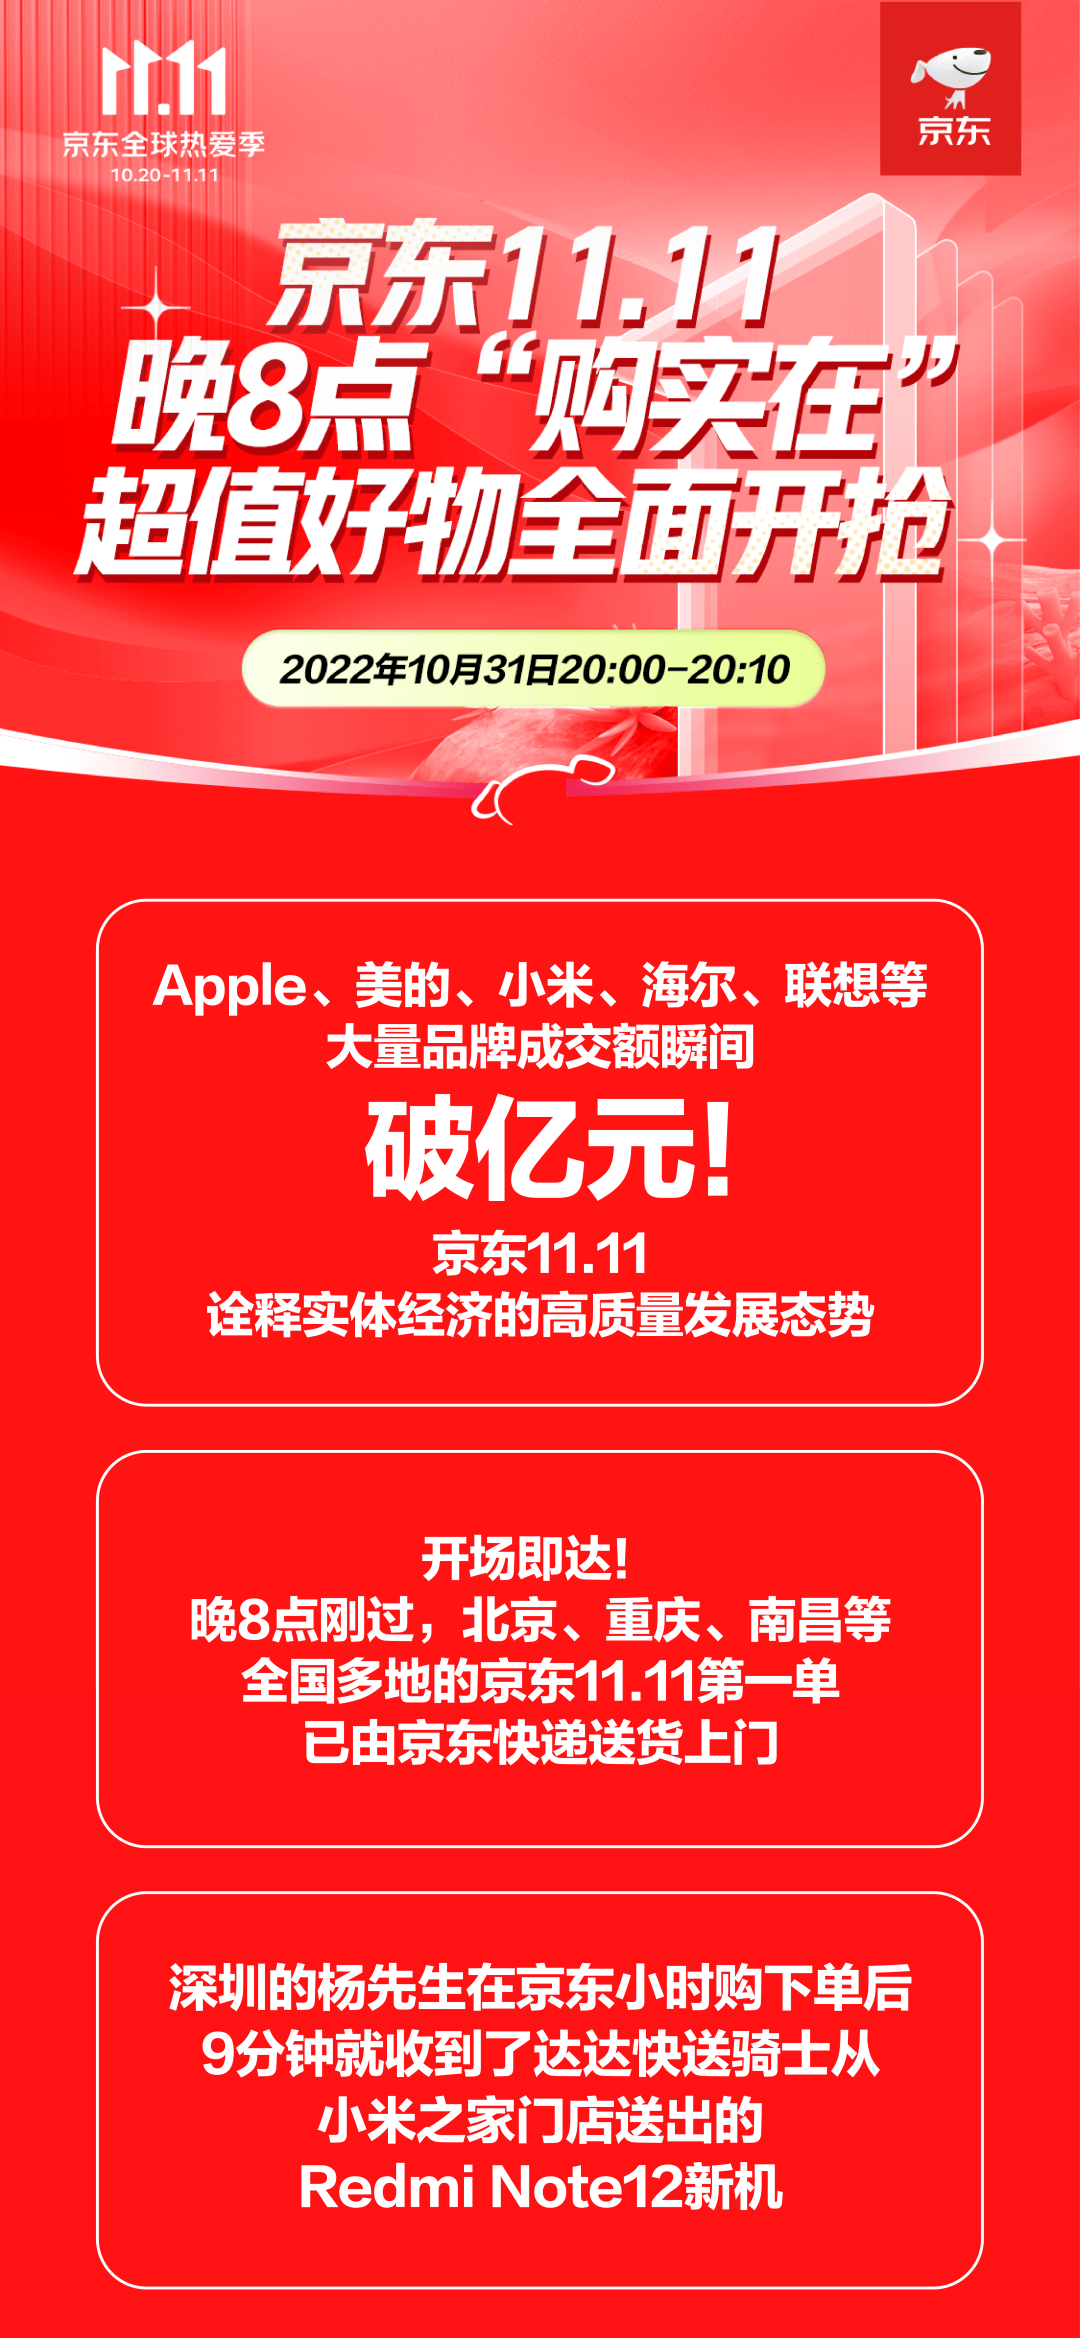 华为手机荣耀App是什么:京东双 11：苹果、小米、华为、荣耀、iQOO 手机成交额 1 秒破亿